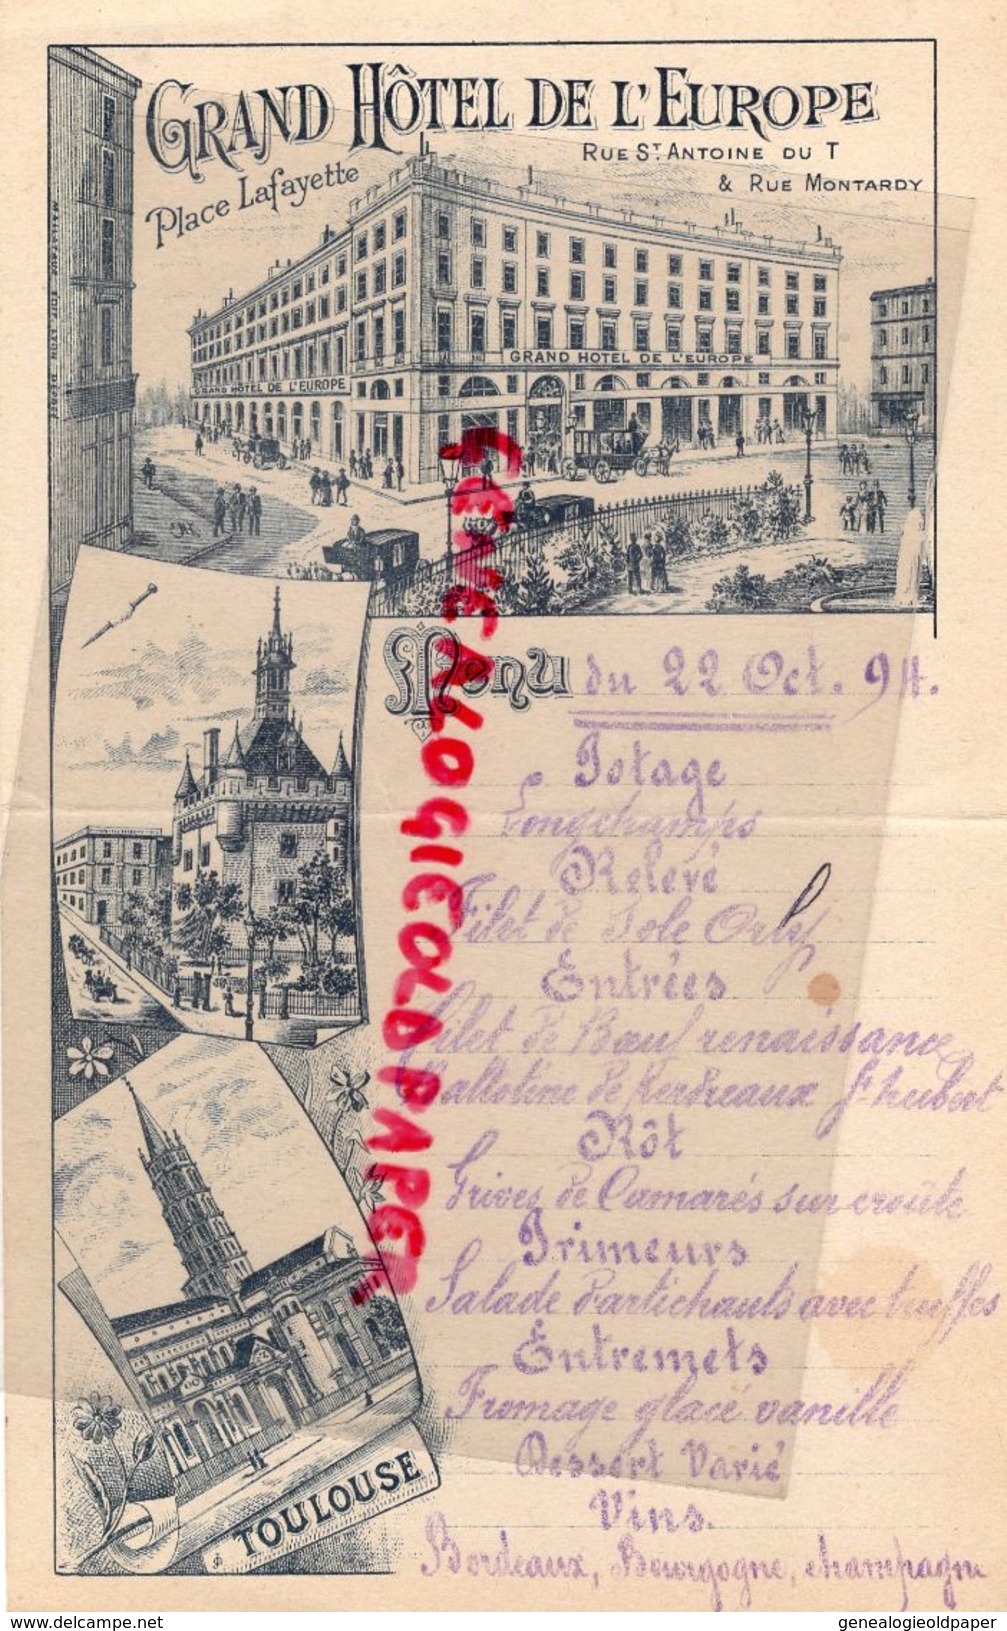 31- TOULOUSE- RARE MENU GRAND HOTEL DE L' EUROPE-PLACE LAFAYETTE-RUE ST ANTOINE-RUE MONTARDY-22 OCTOBRE 1894 SNCF - Menükarten